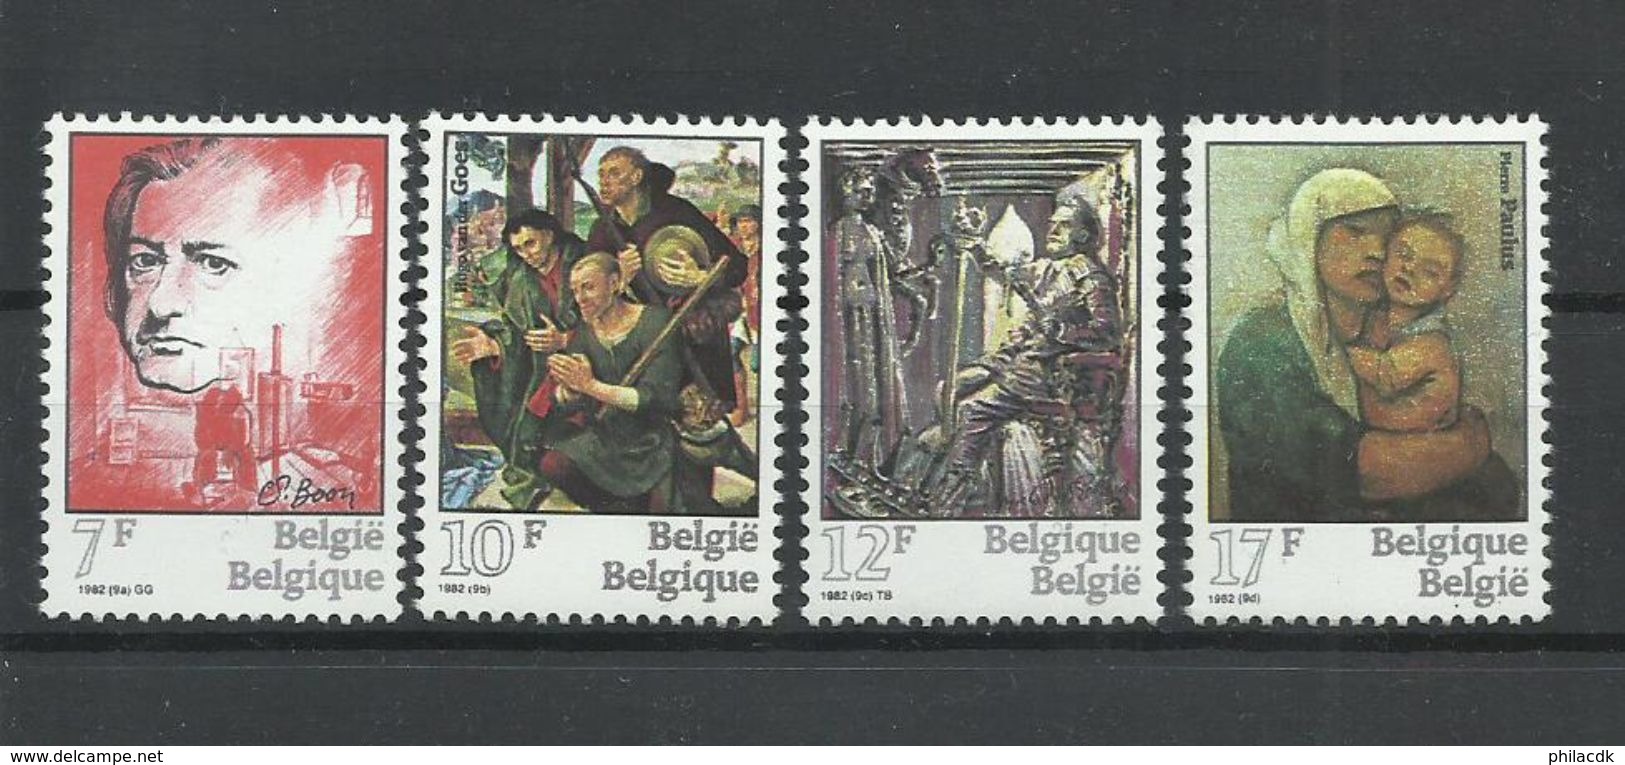 BELGIQUE - N°YT 2060/63 NEUFS** SANS CHARNIERE - COTE YT : 3.75€ - 1982 - Unused Stamps